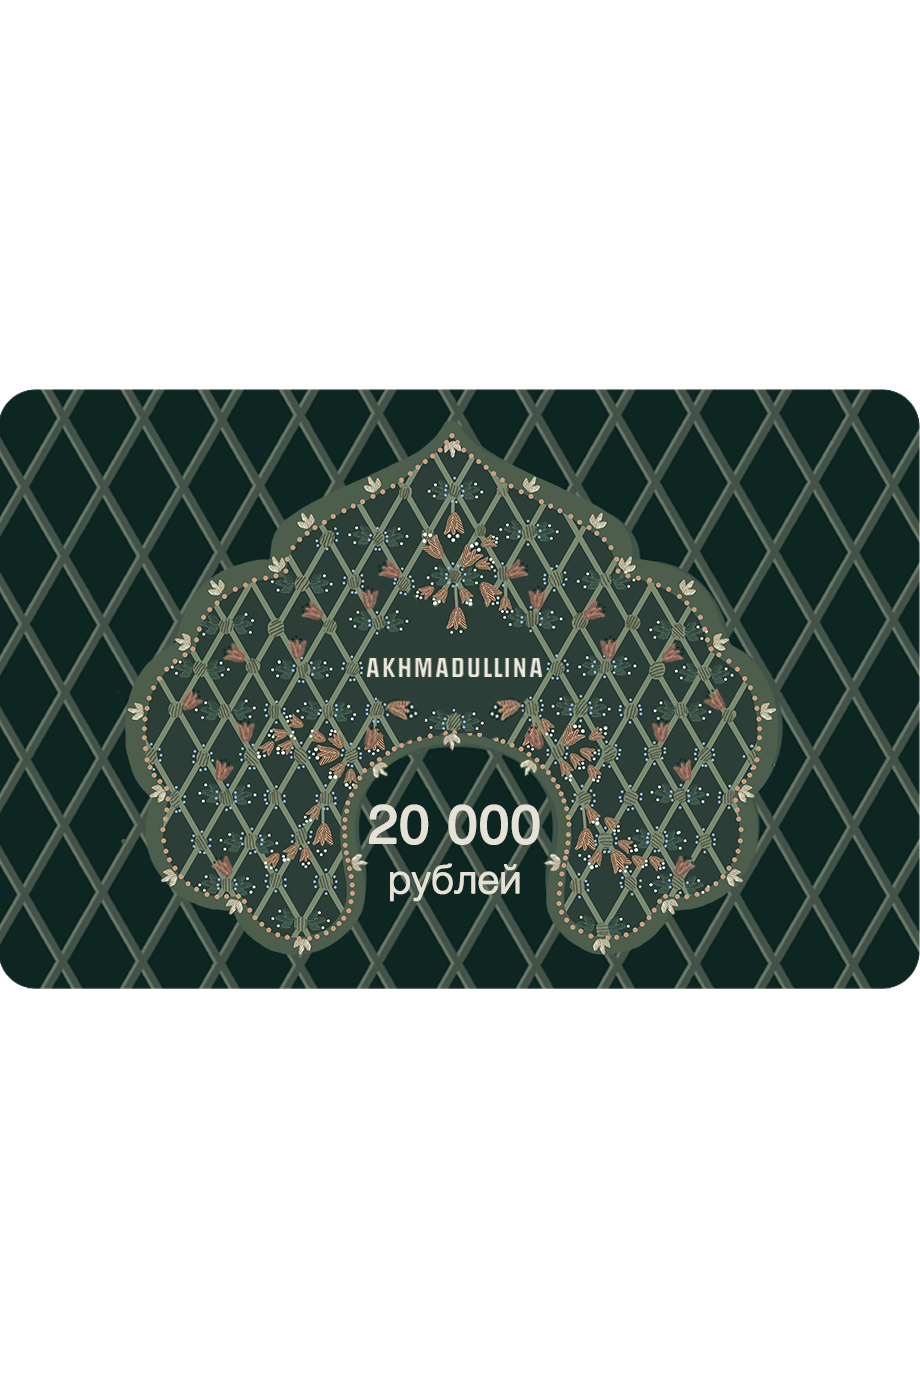 Подарочный сертификат 20 000 руб. AKHMADULLINA